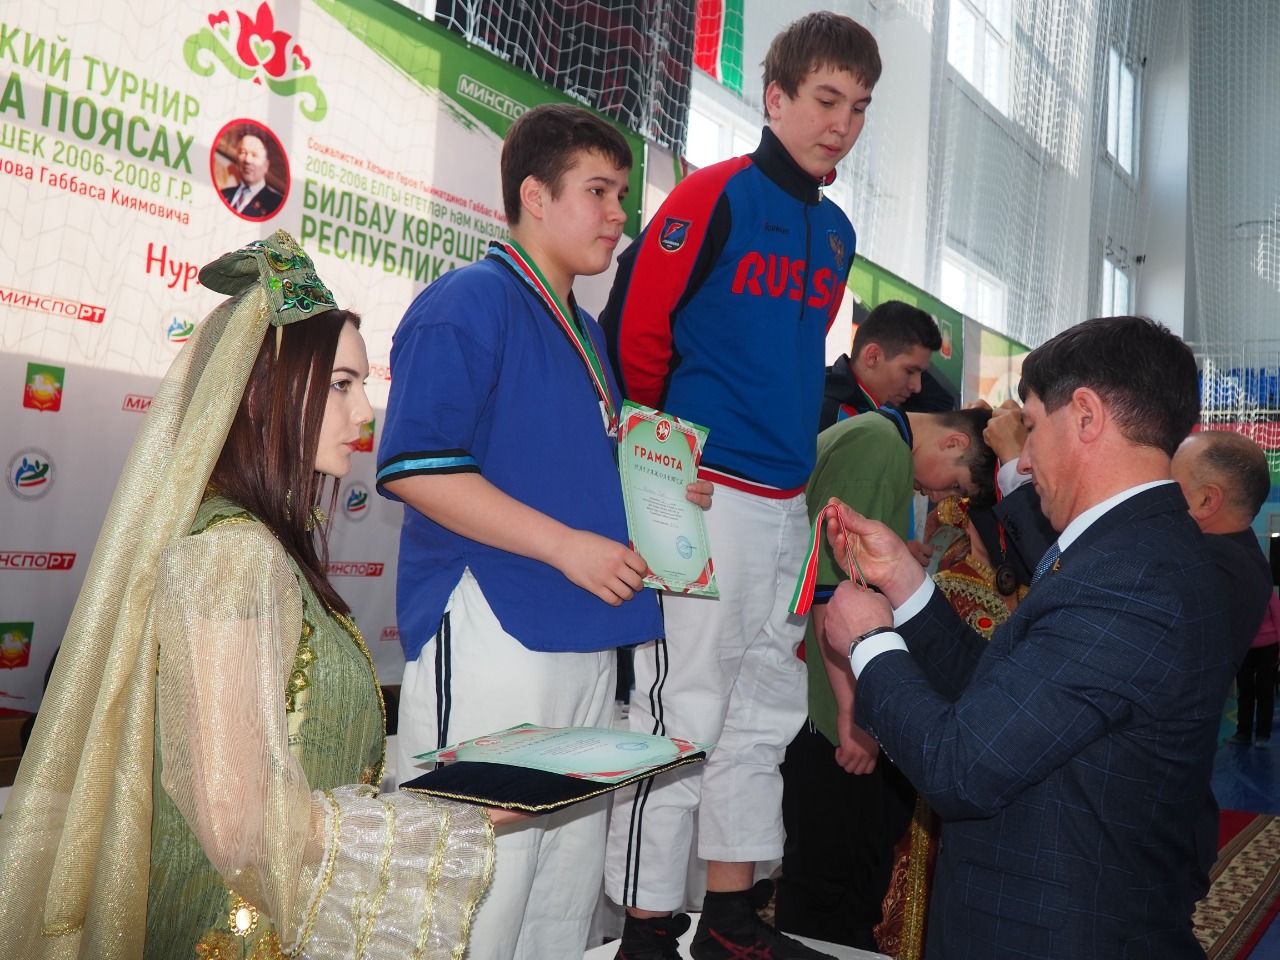 В Нурлате завершился республиканский турнир по борьбе на поясах памяти Габбаса Гиматдинова